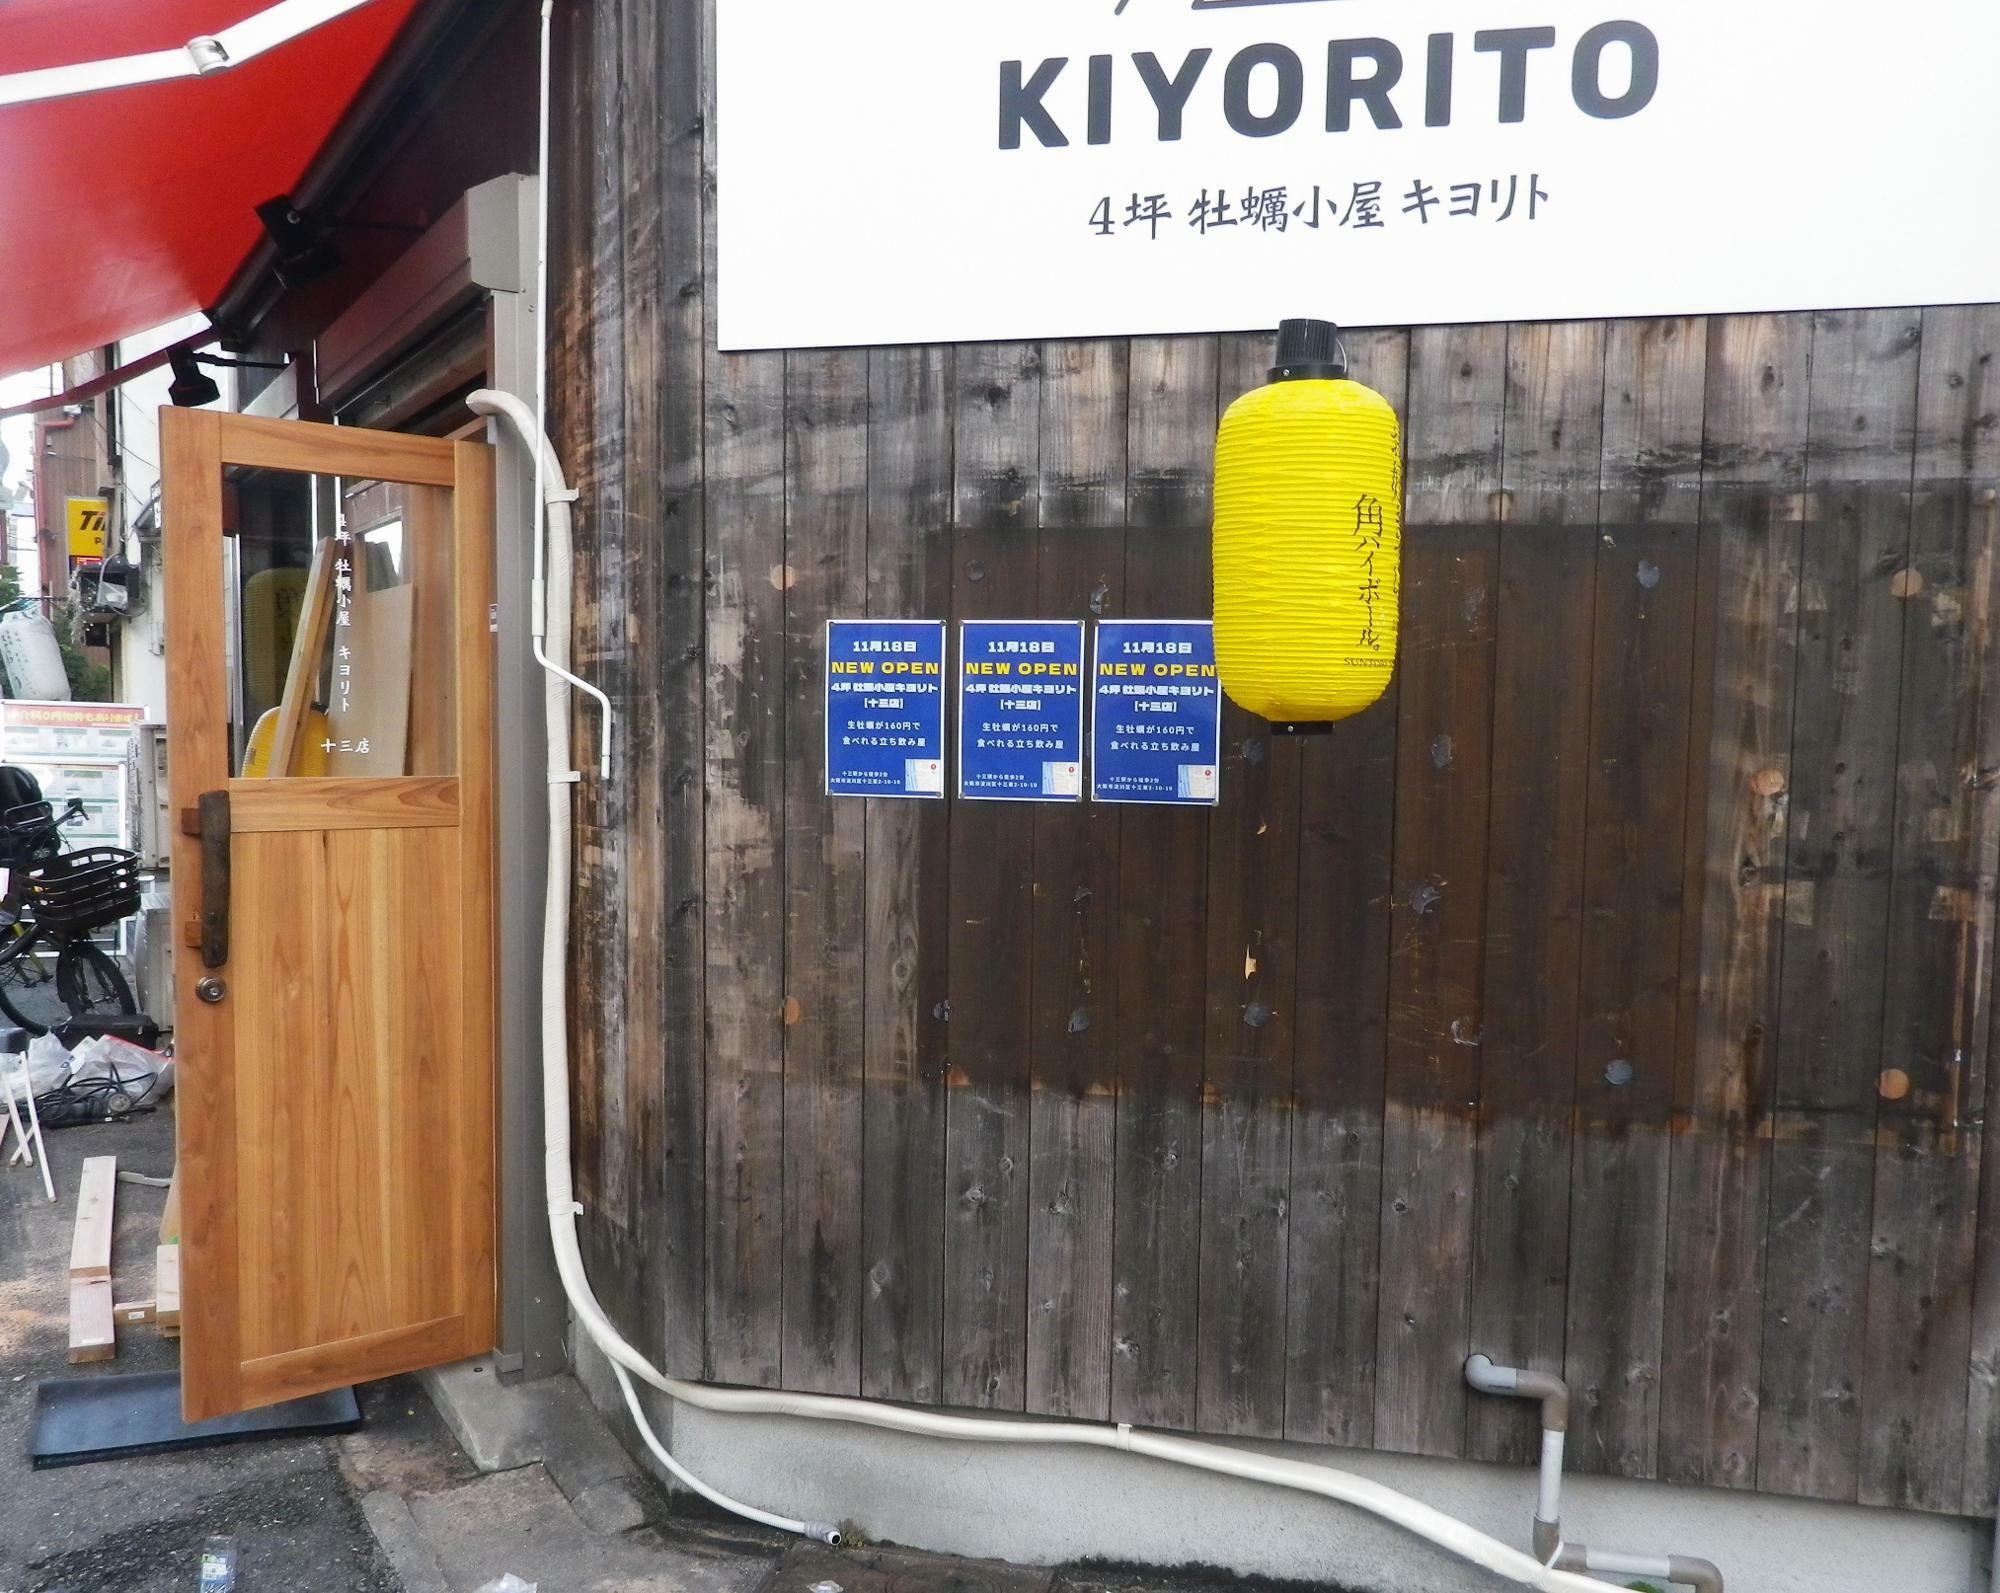 大阪初出店の「4坪　牡蠣小屋キヨリト十三店」。